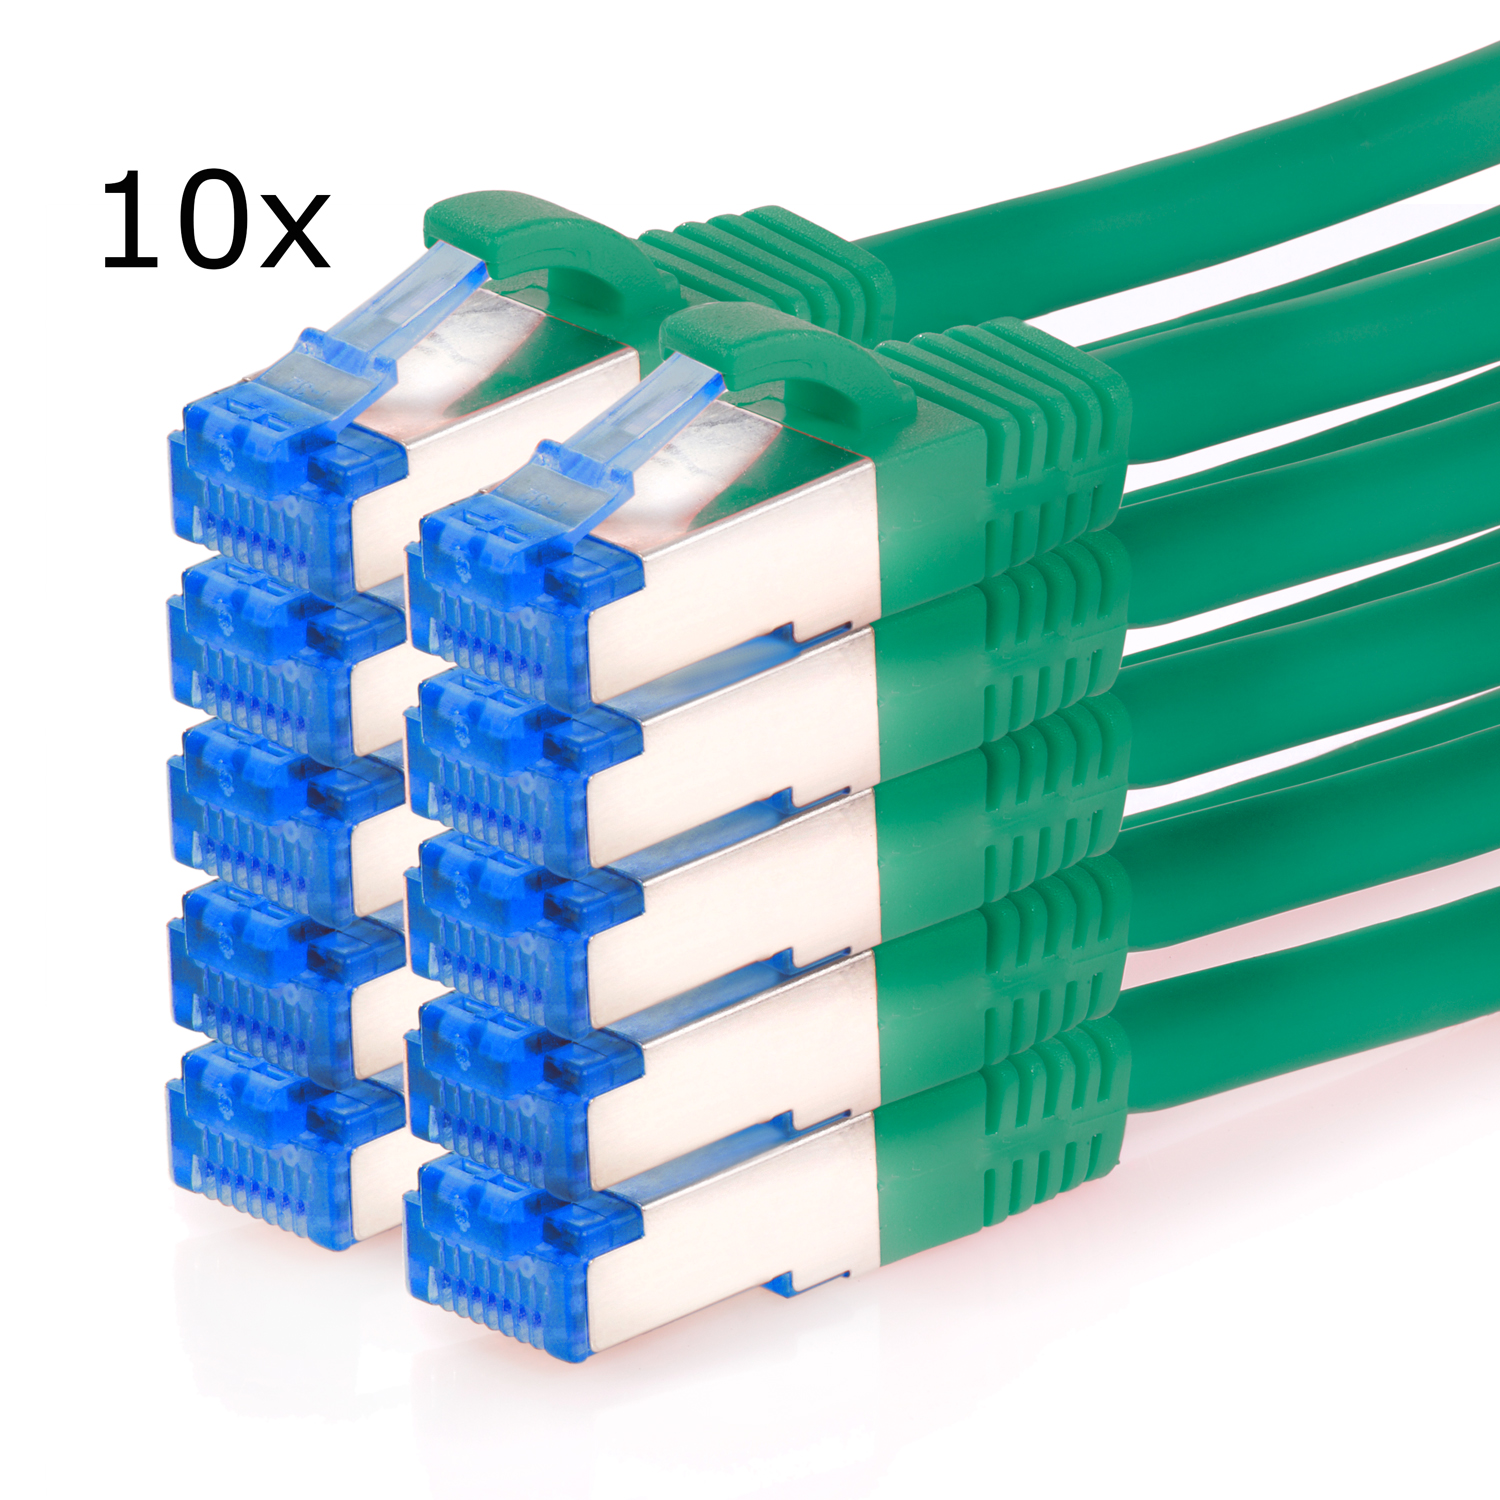 TPFNET 10er Pack Patchkabel 0,25 grün, / 10GBit, Netzwerkkabel, 0,25m Netzwerkkabel m S/FTP